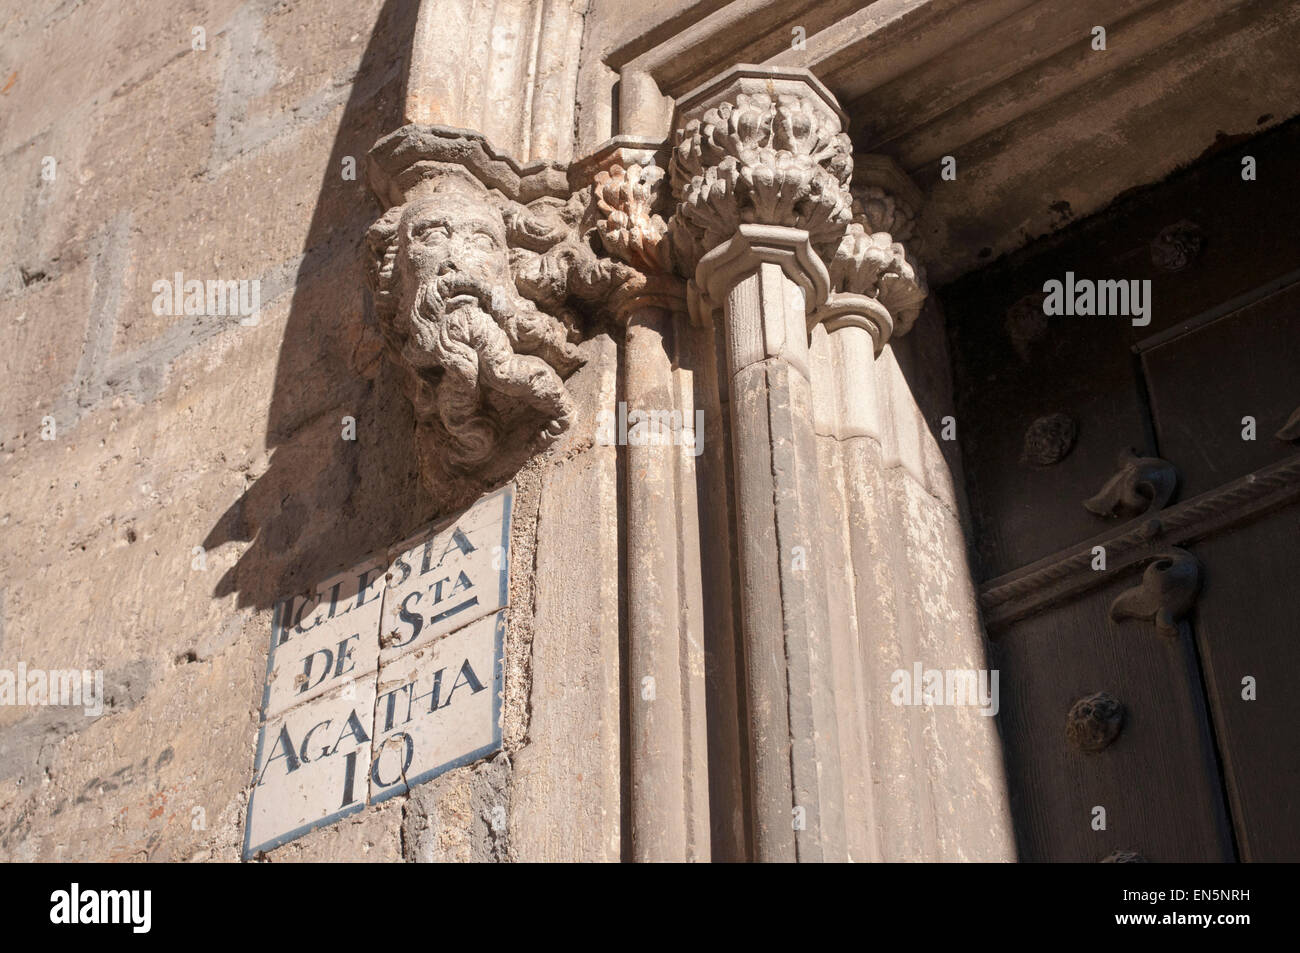 Church of Santa Agata. Plaza del Rey, King's Square, Barcelona, Catalonia, Spain Stock Photo